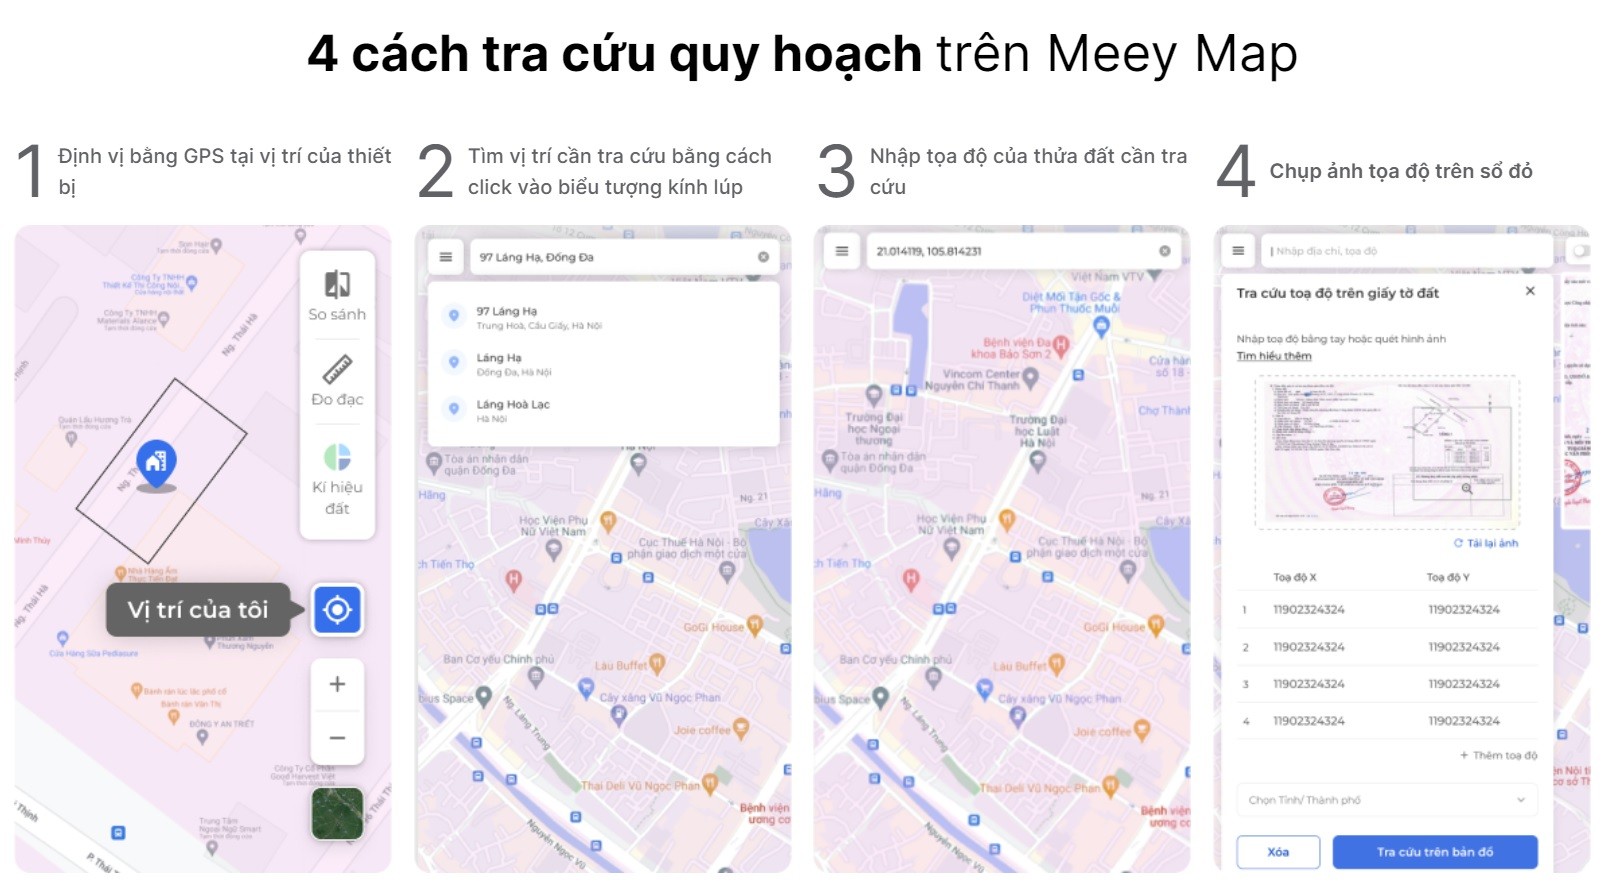 
Cách tra cứu quy hoạch trên Meey Map cũng khá thuận tiện, dễ dàng.
